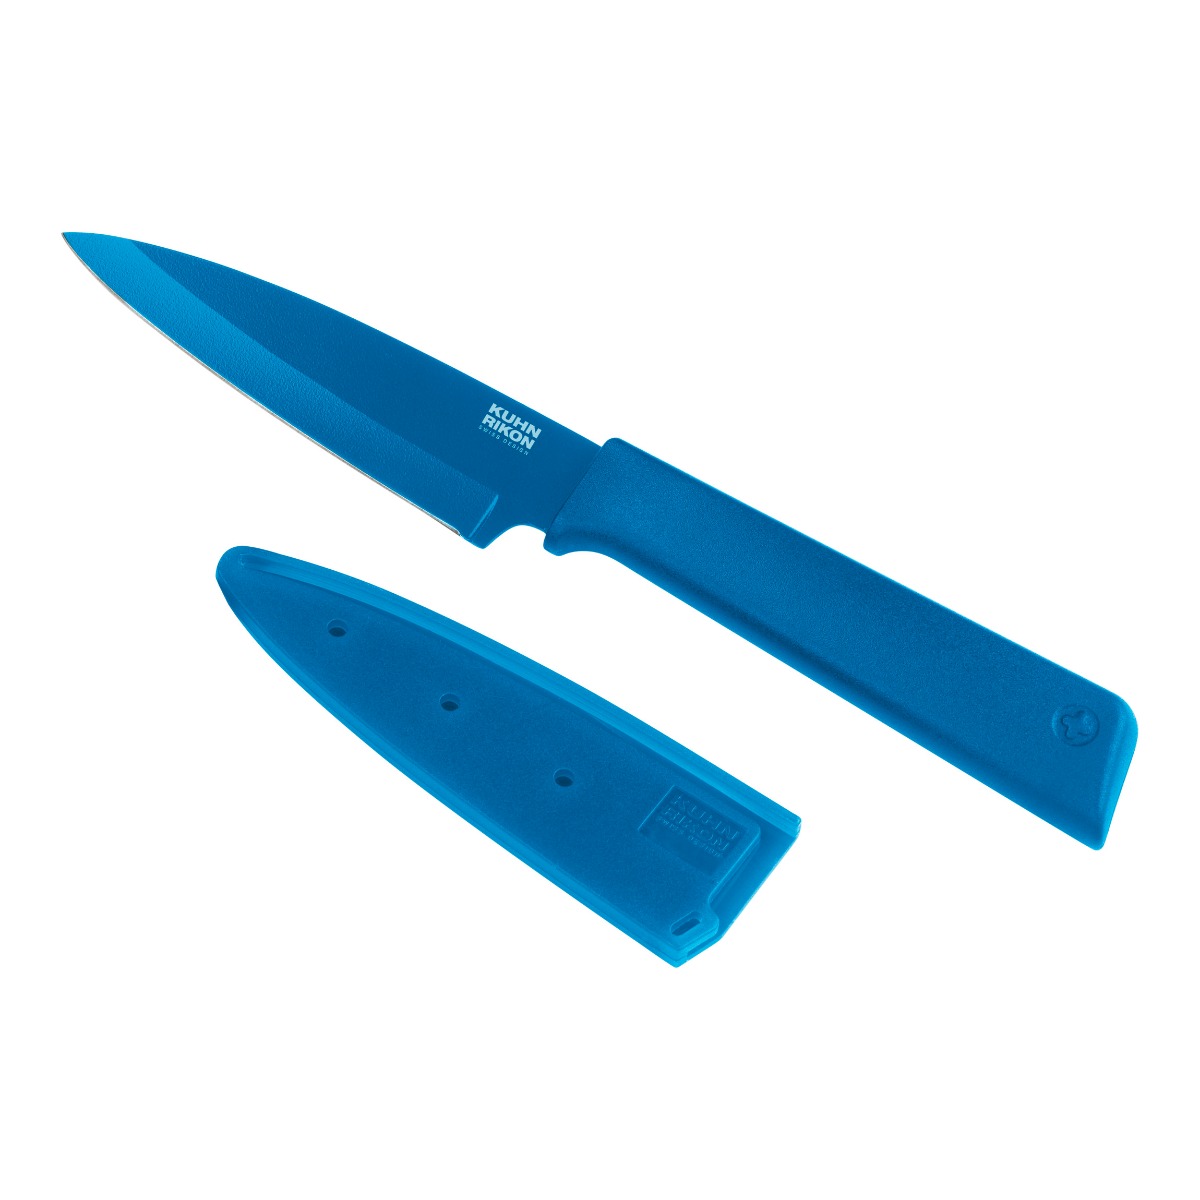 Kuhn Rikon - Colori(r)+ Paring Knife blue